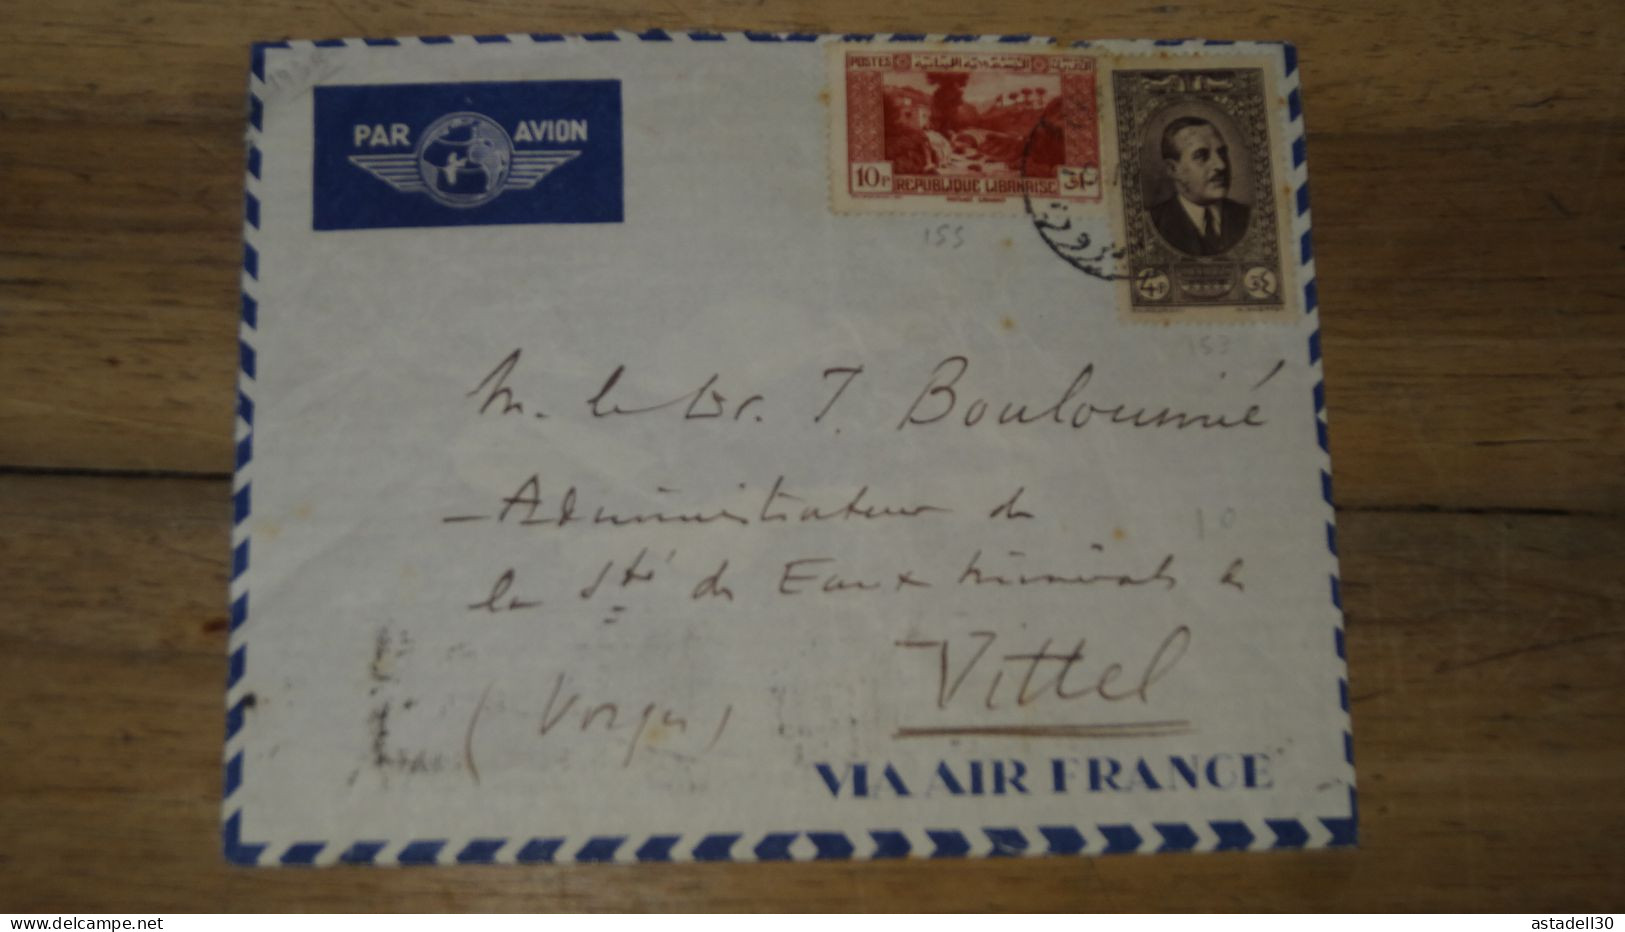 Enveloppe  LIBAN, Air France,  1938 ......... Boite1 ..... 240424-206 - Lebanon